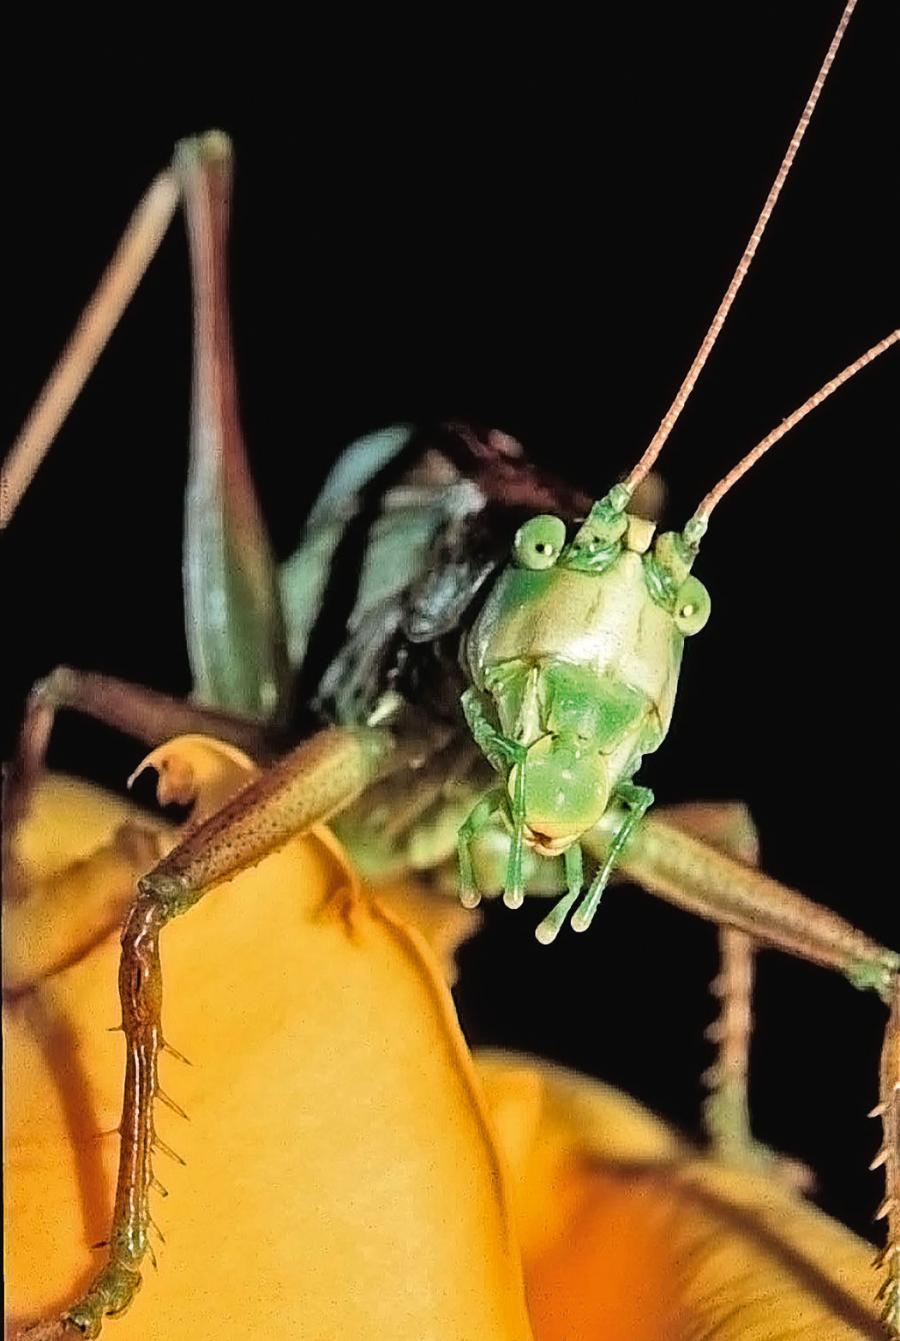 Wesoły wyraz twarzy pasikonika śpiewającego (Tettigonia cantans) jest efektem owalnego kształtu wargi górnej. W rzeczywistości owady są „śmiertelnie poważne”, a pasikoniki to bezwzględni drapieżcy.